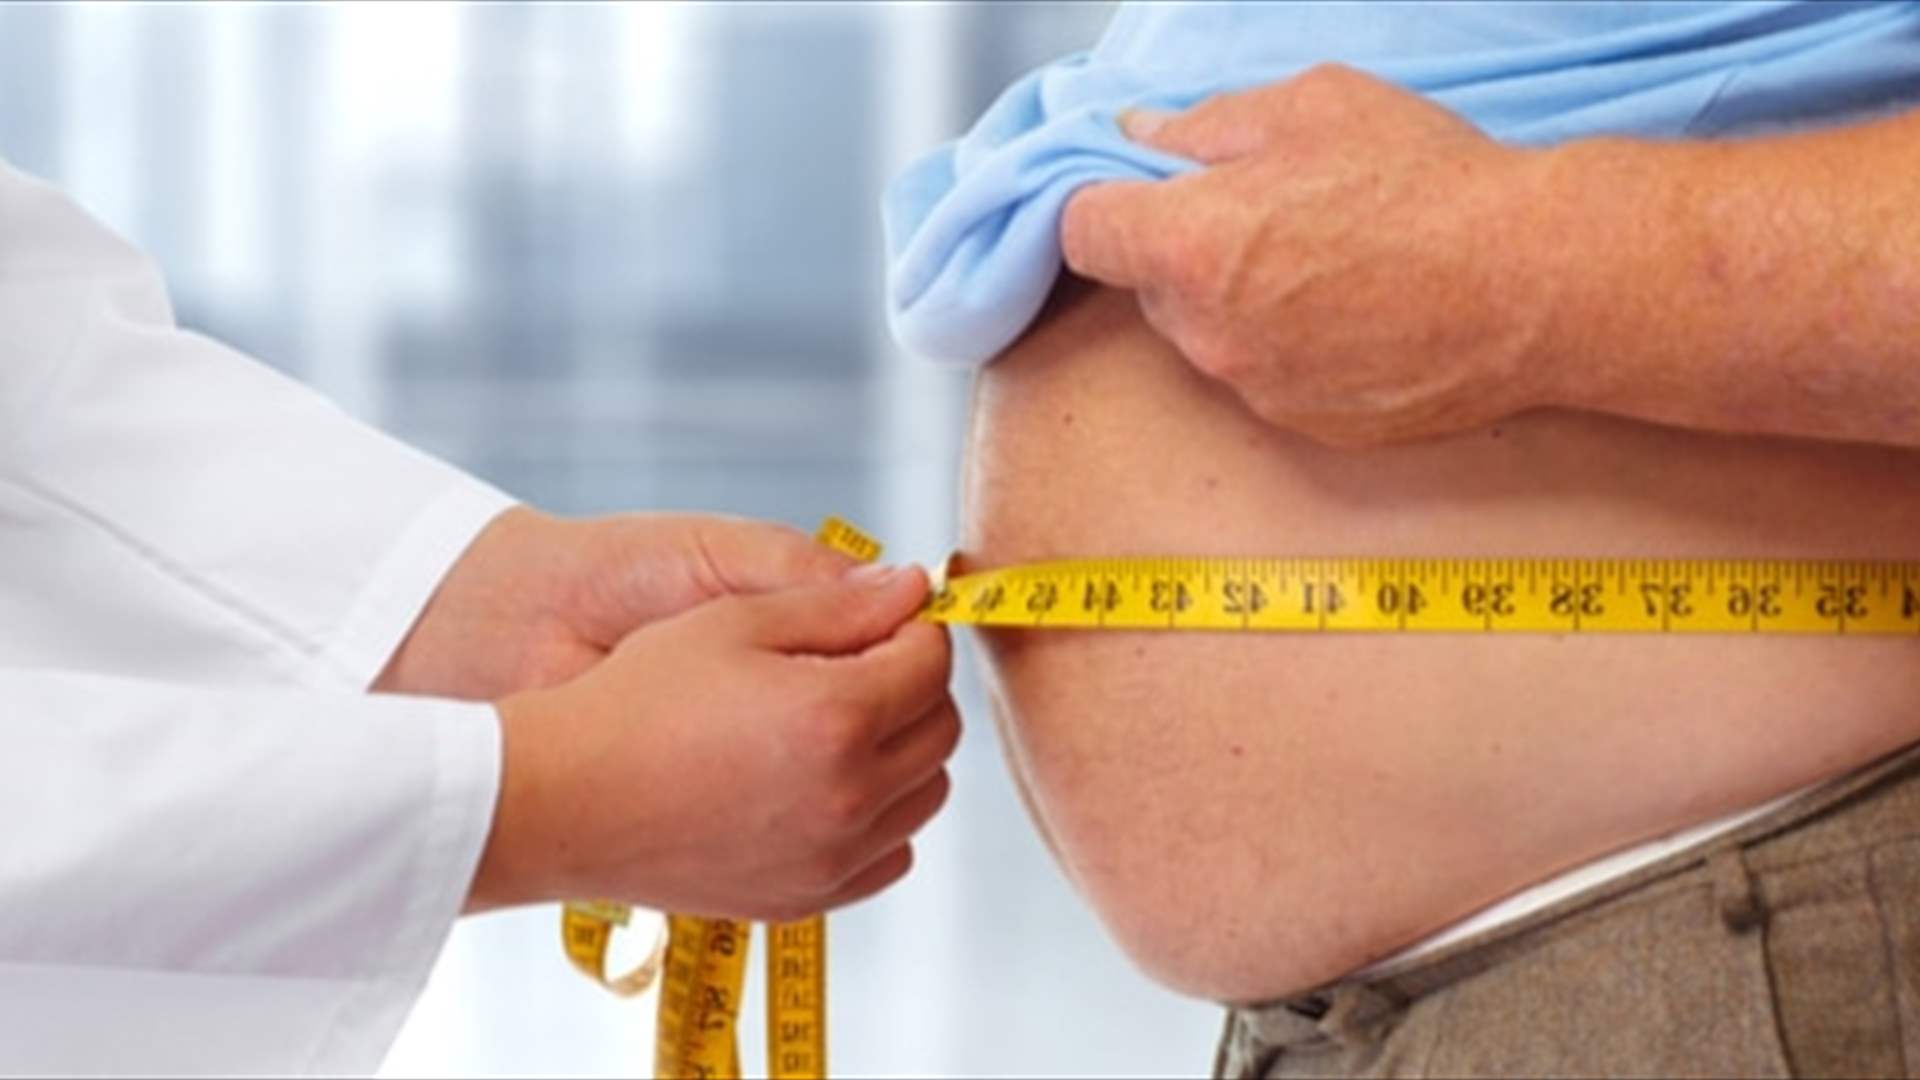 أداة تتيح تَوَقُع حجم فقدان الوزن بعد عملية تصغير المعدة